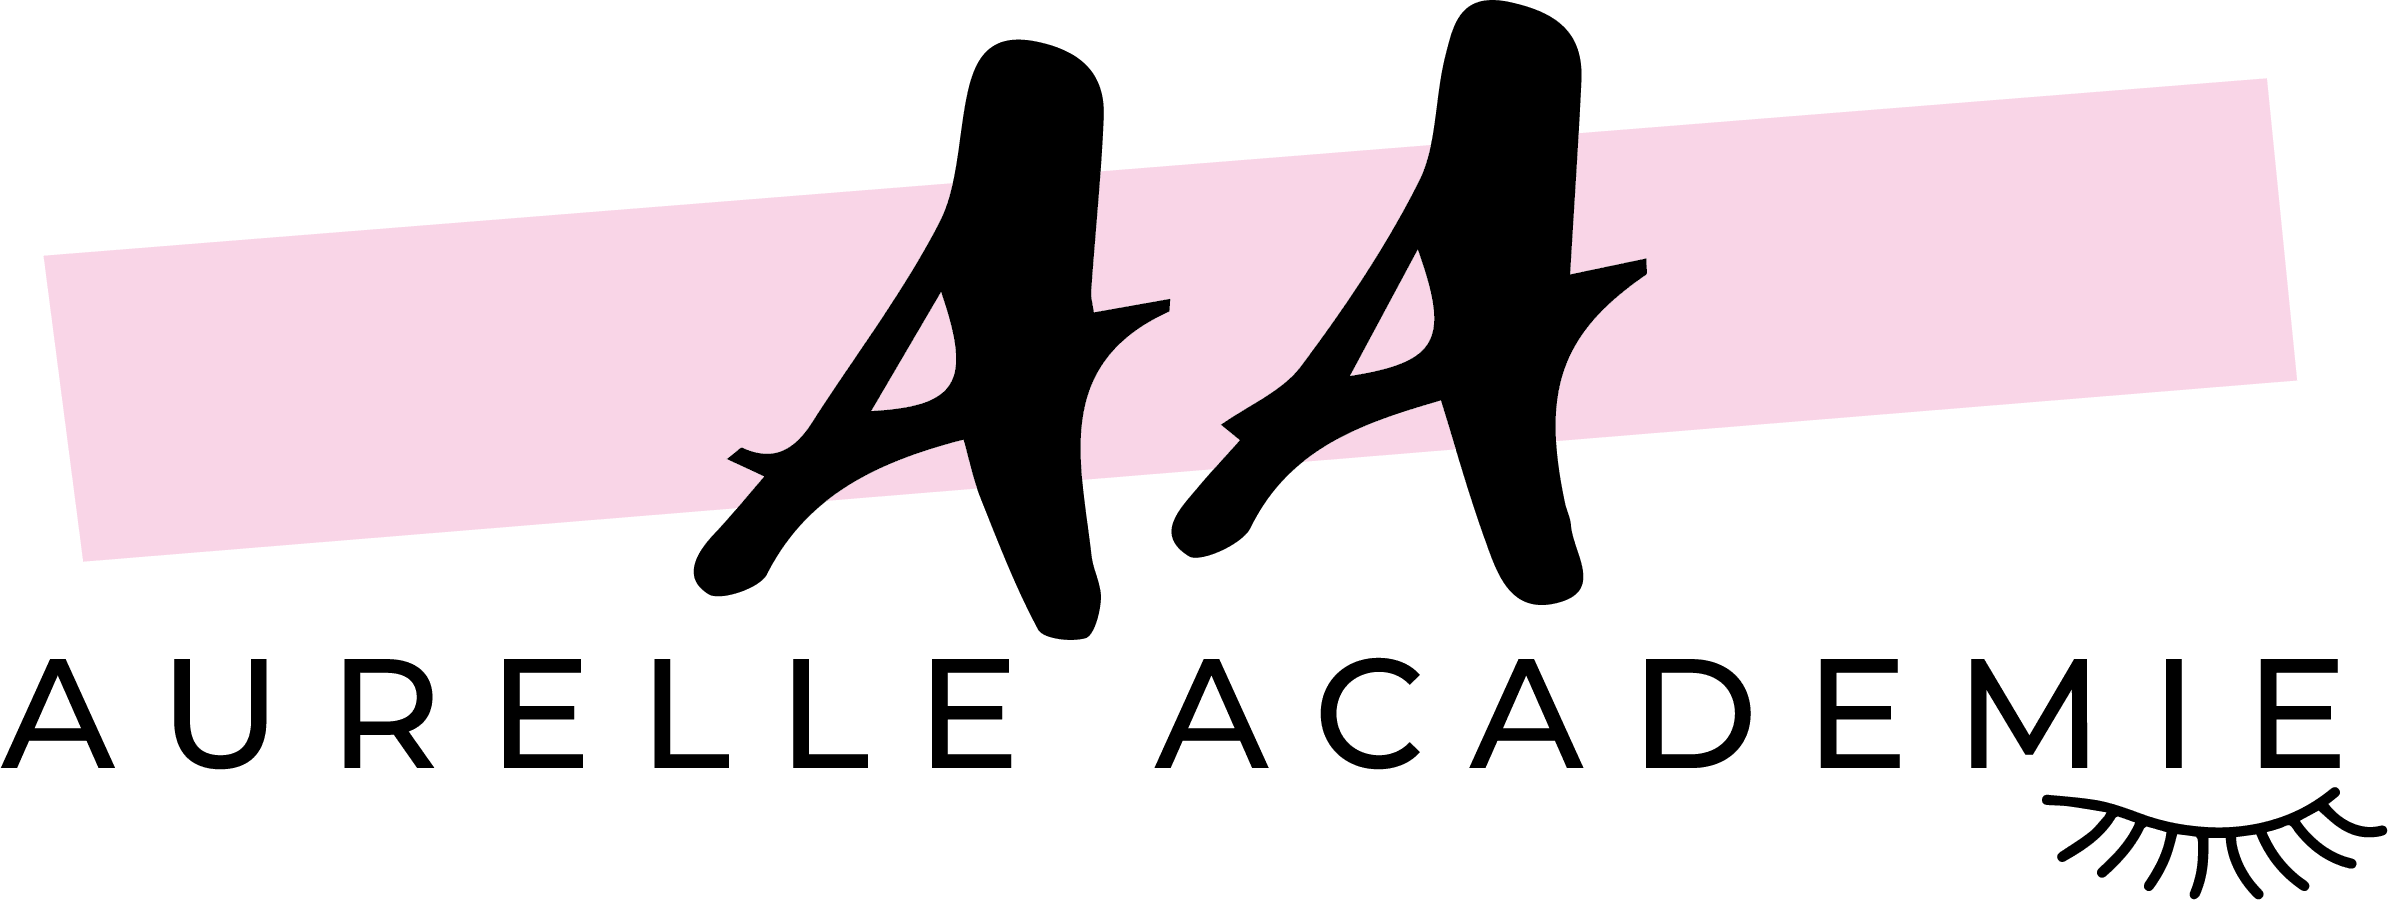 Aurelle Academie